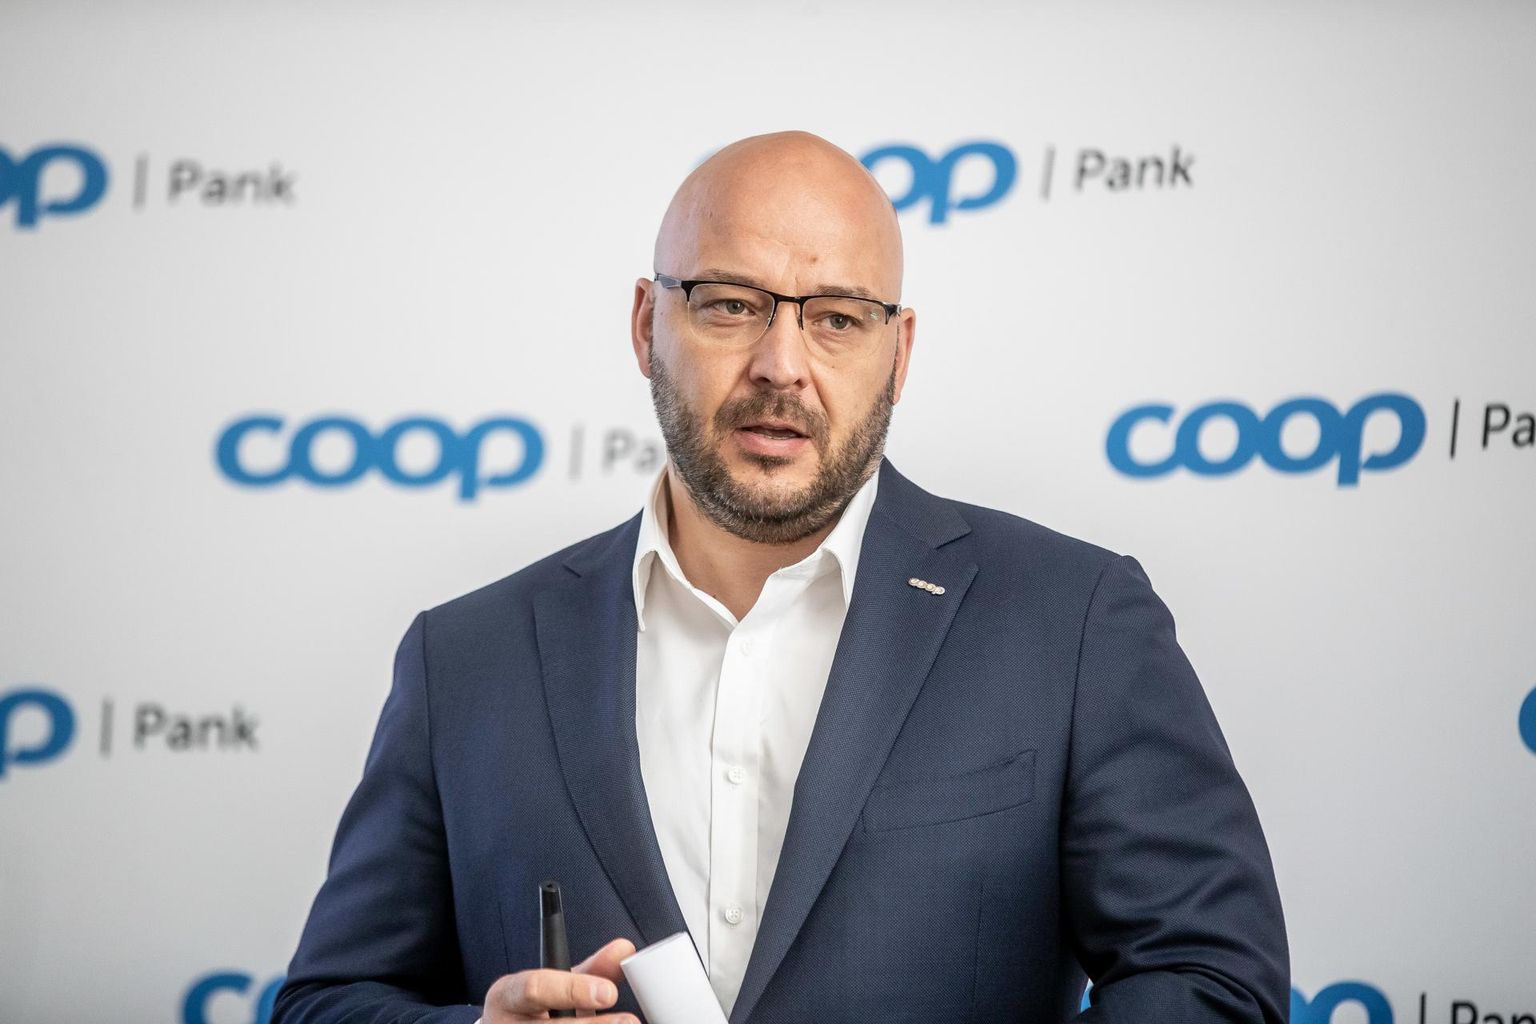 Panga nõukogu esimees Jaanus Vihand märkis insaideritest enim Coop Panga aktsiaid.